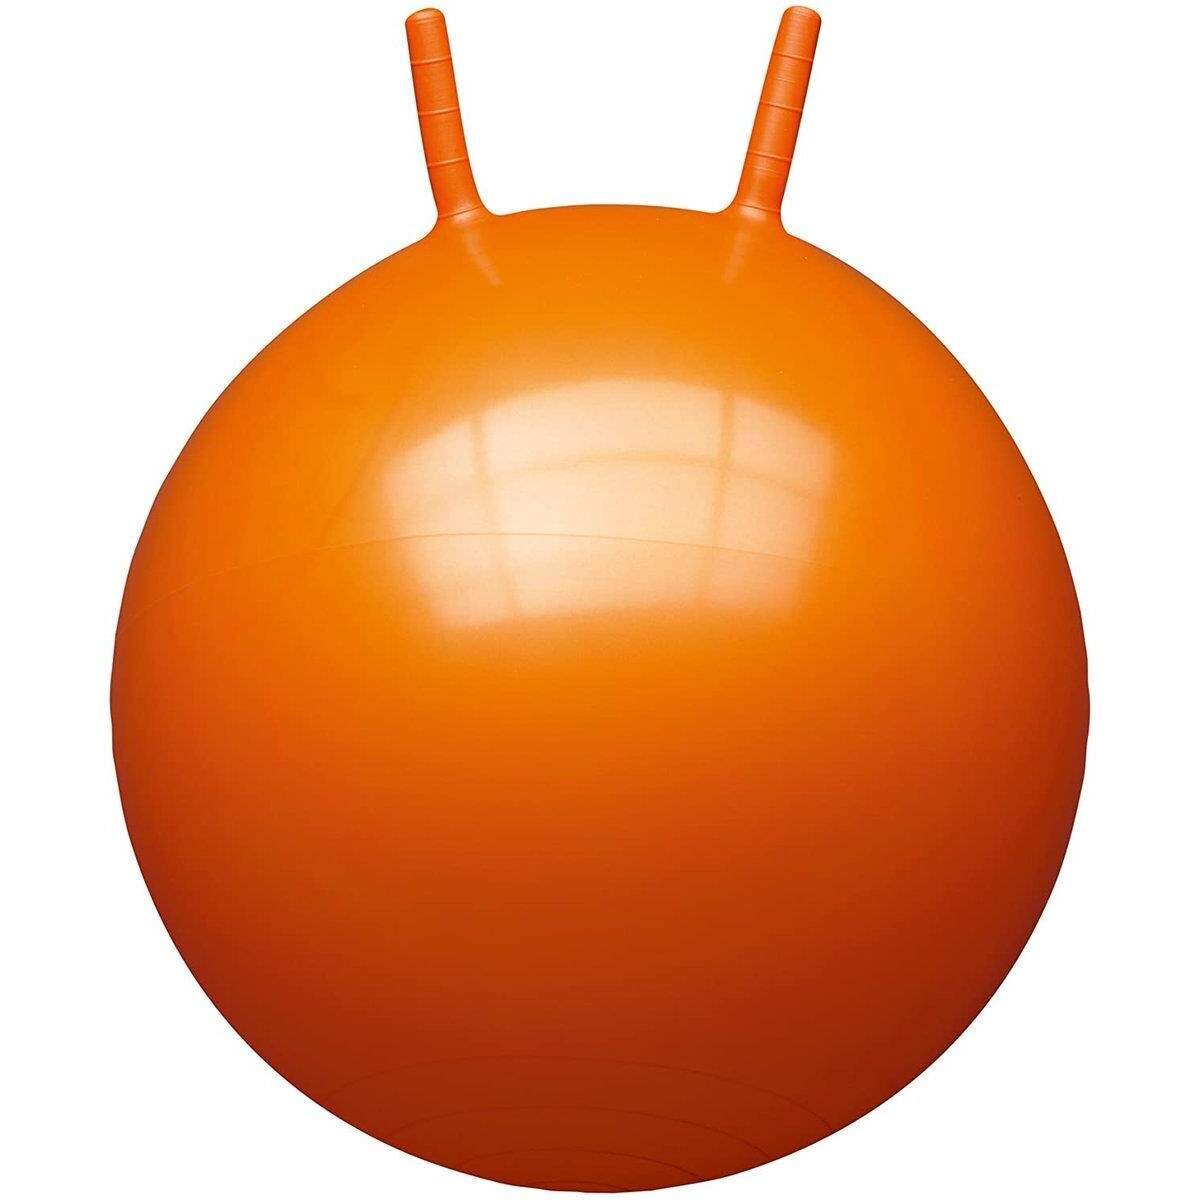 John Sprungball 60cm, 1 Stück, 2-fach sortiert in den Farben orange und blau